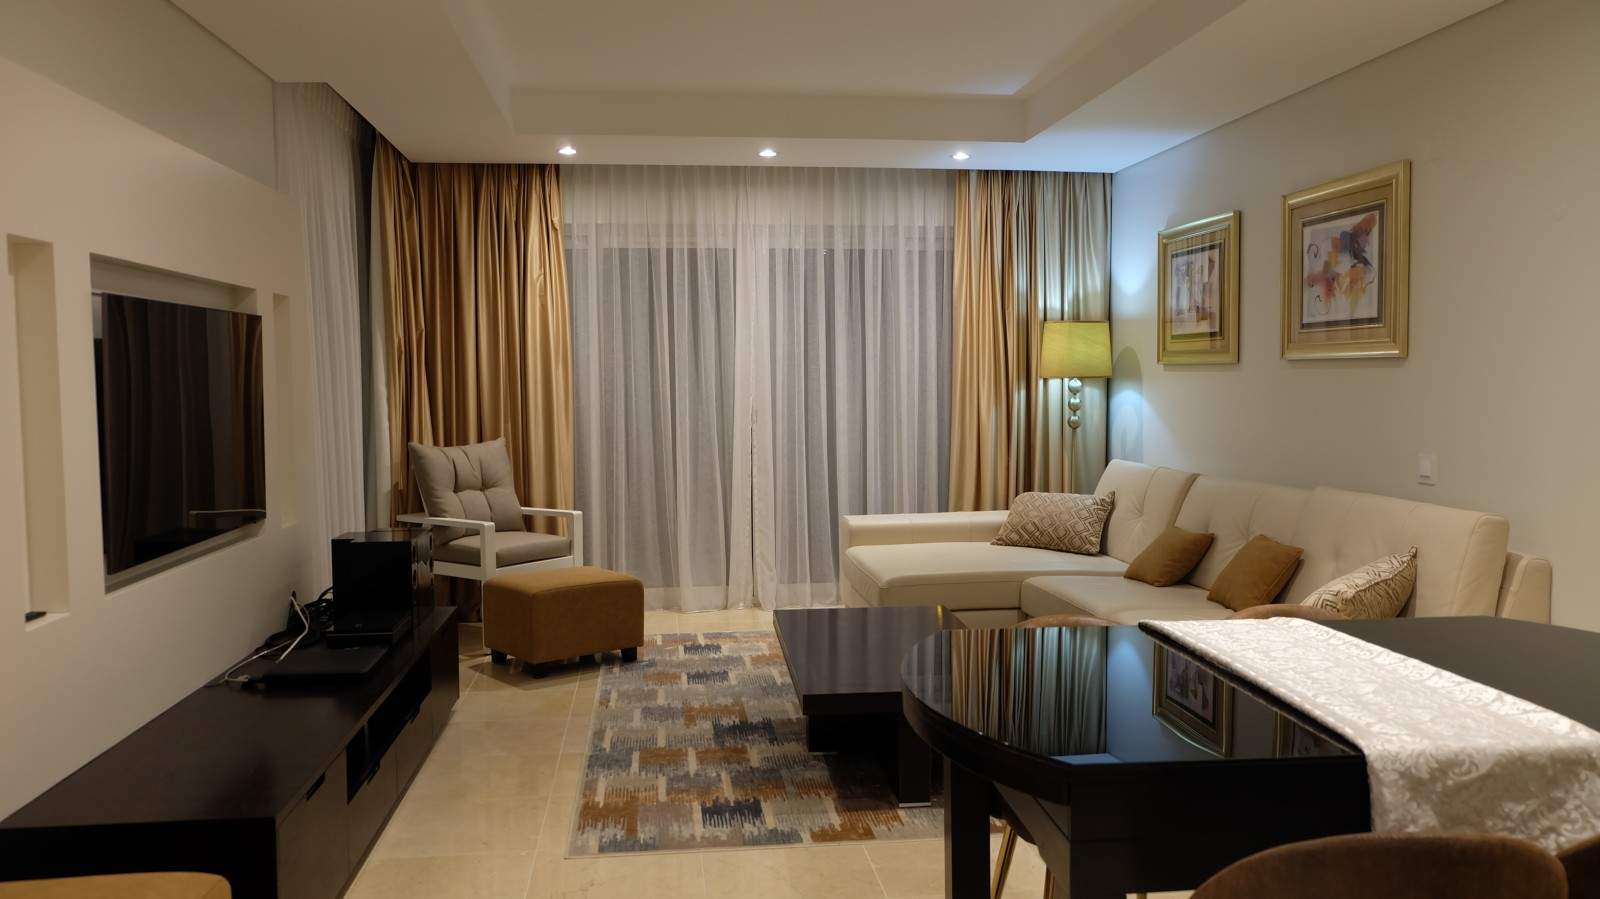 1 Bedroom Apartment in Luxury Resort for sale, in Vilamoura, Algarve_213630